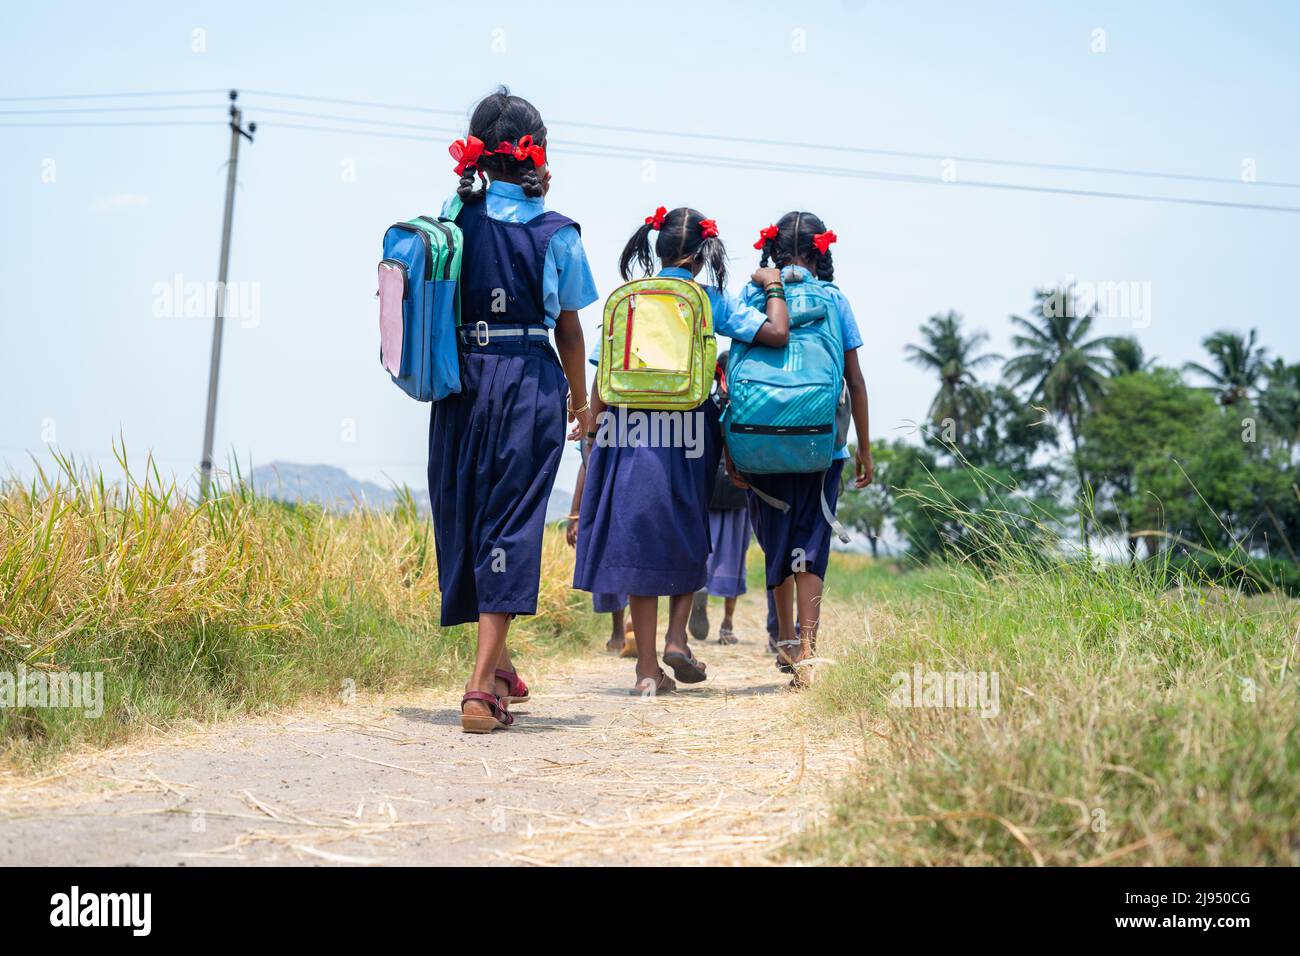 Back view shot di villaggio bambini in uniforme andare a casa da scuola dopo classe - concetto di istruzione, stile di vita infantile e amicizia Foto Stock